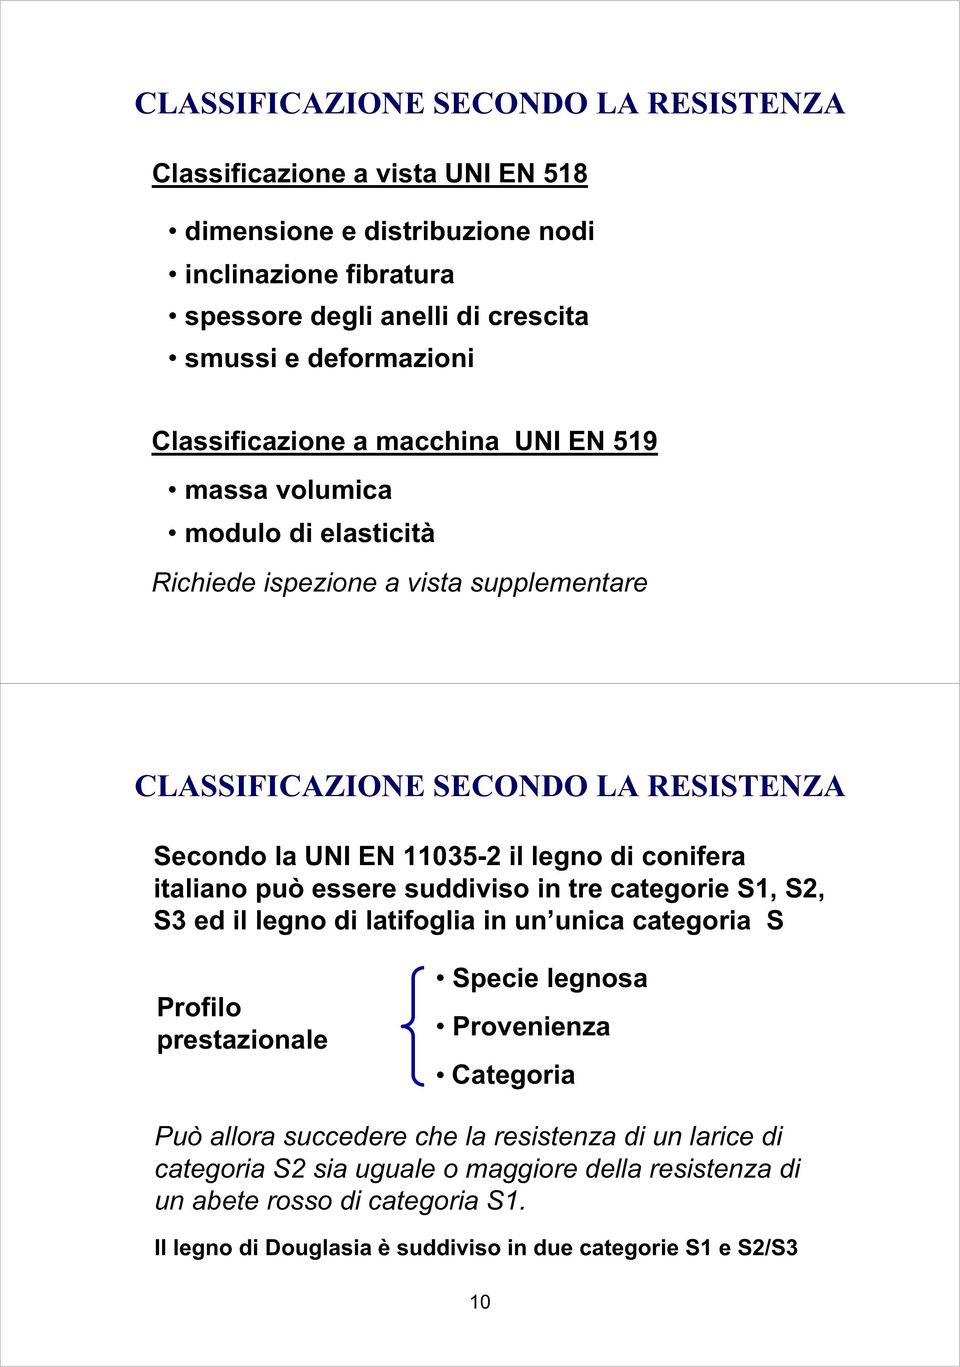 i conifera italiano può essere suiviso in tre categorie S1, S, S3 e il legno i latifoglia in un unica categoria S Profilo prestazionale Specie legnosa Provenienza Categoria Può